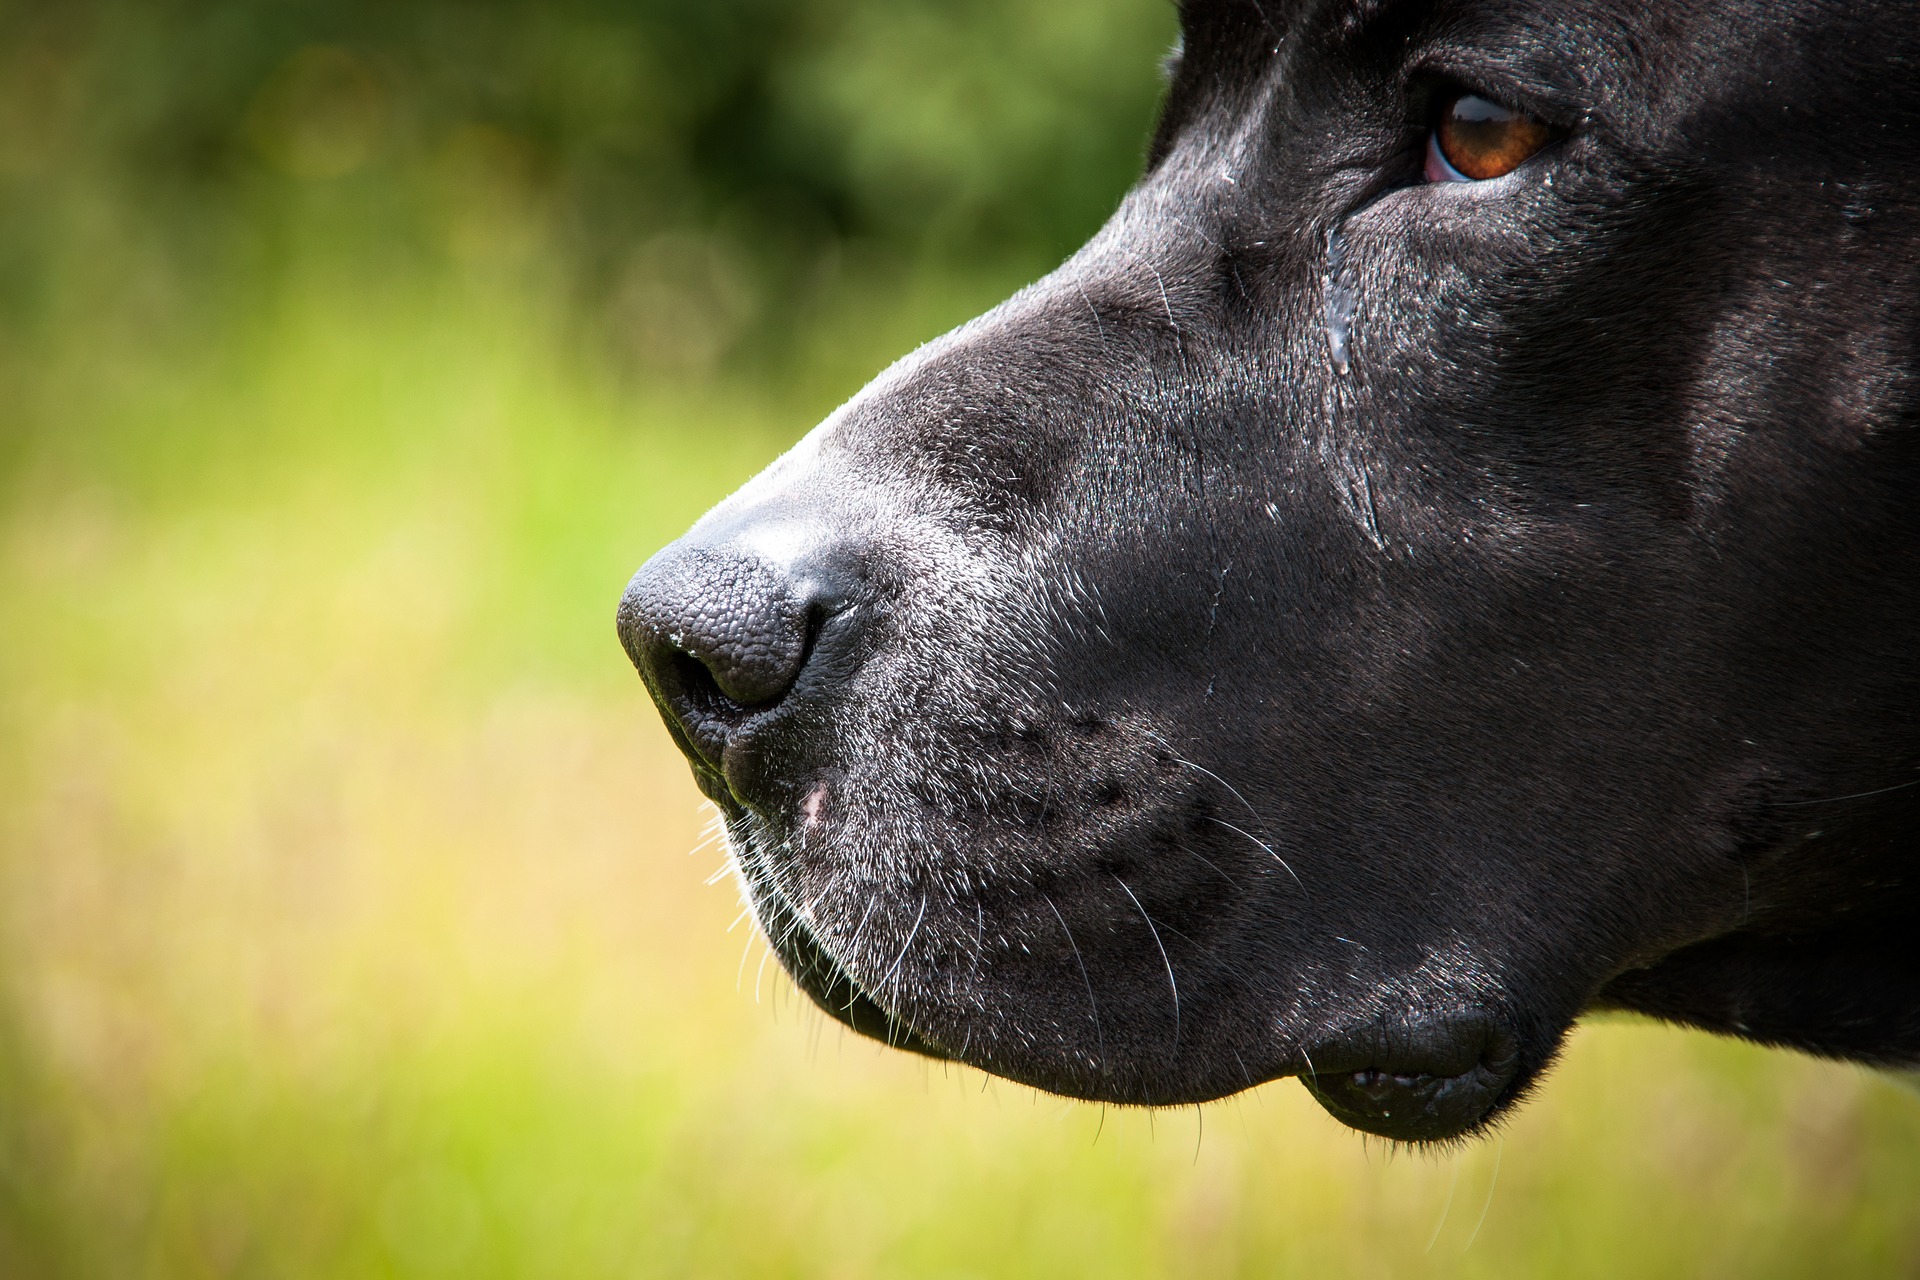 Raça influi pouco na 'personalidade' individual de cachorros, diz estudo